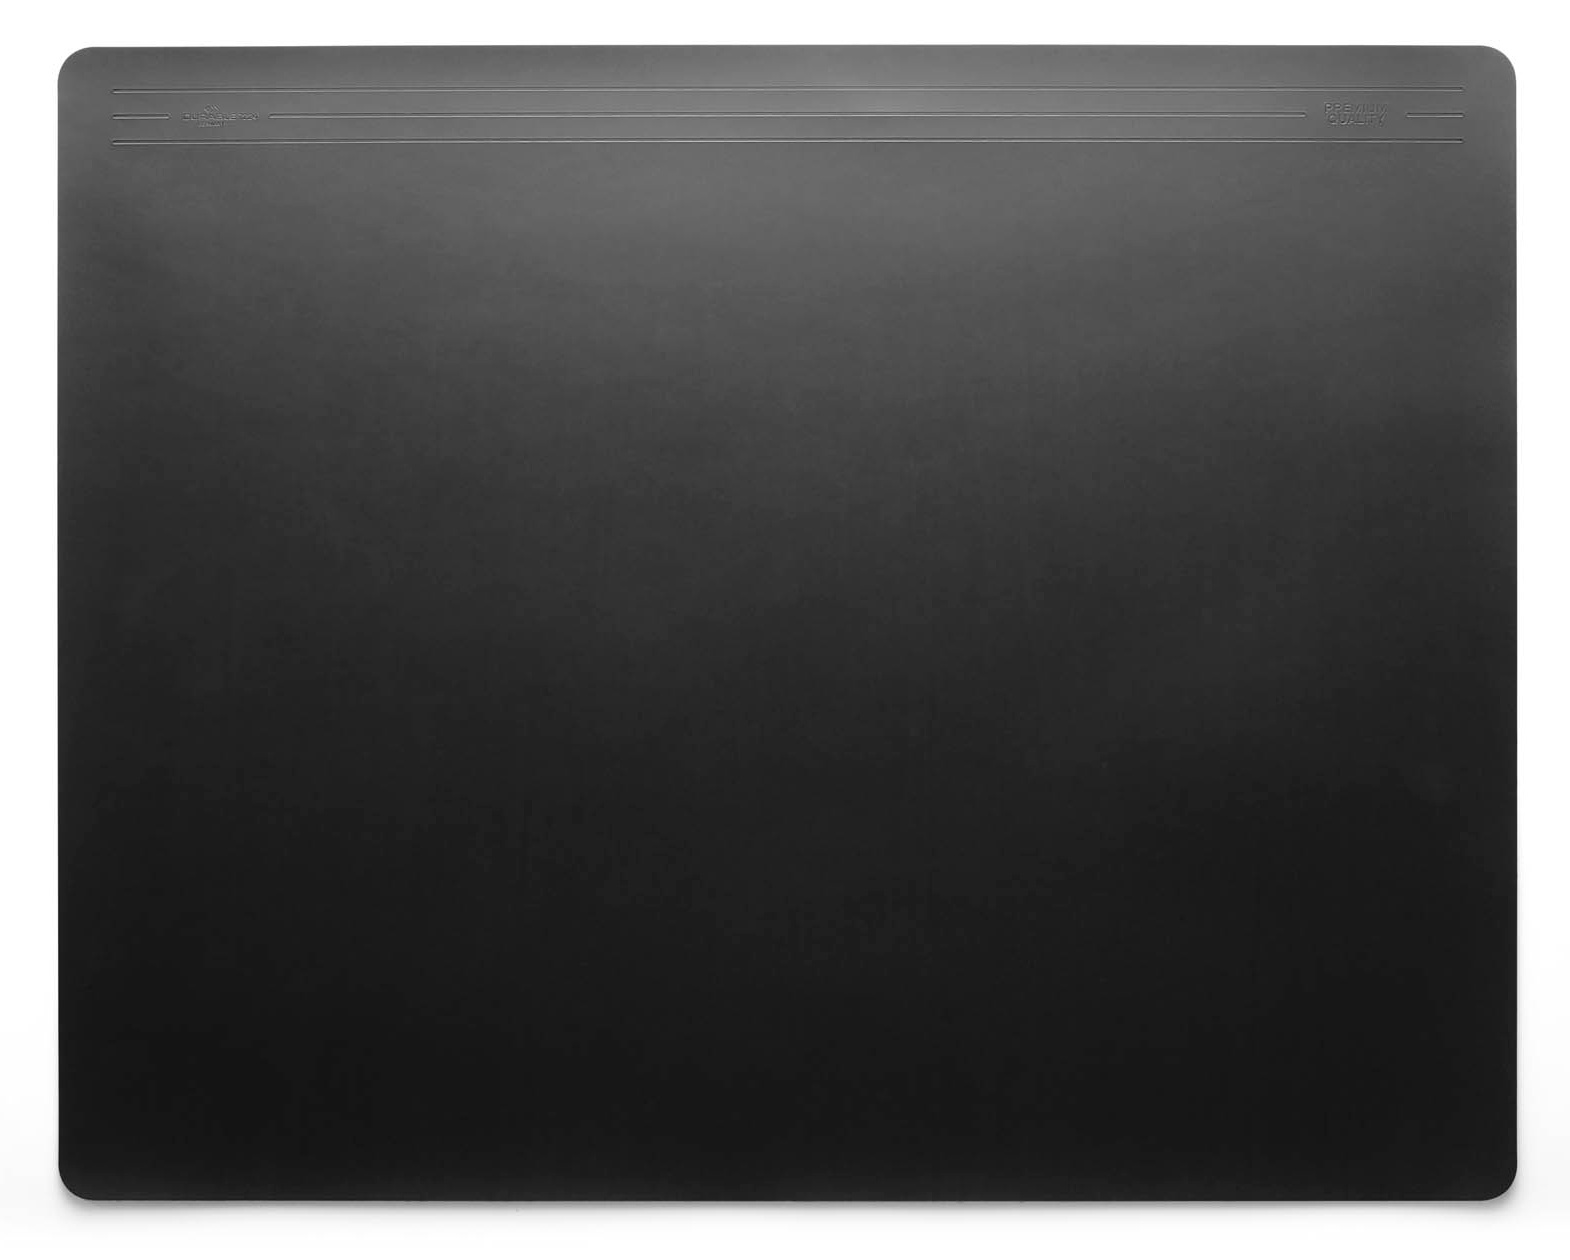 Покрытие Durable 7224-01 для стола, 65х52 см, нескользящая основа, цвет черный (7224-01)